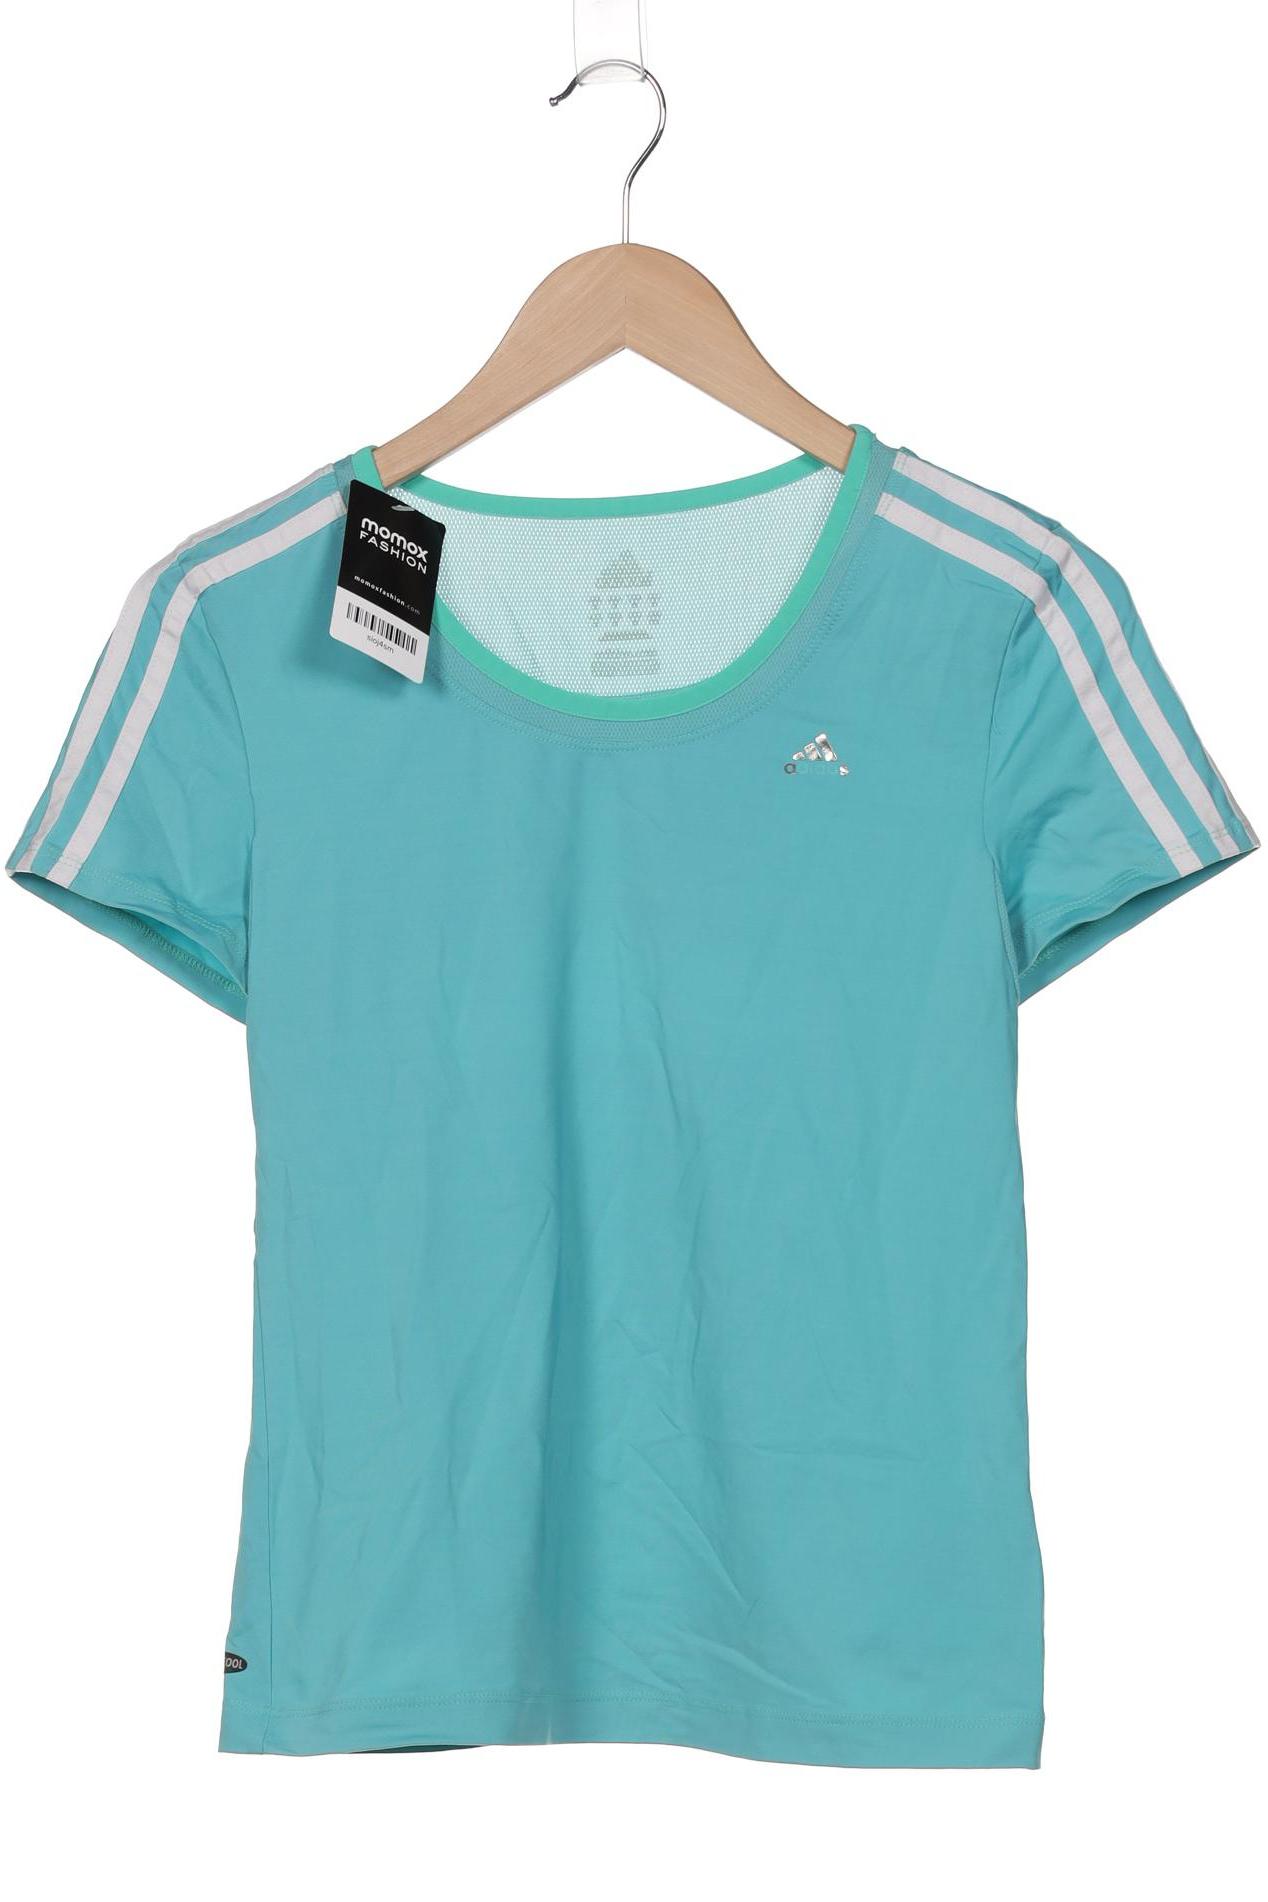 adidas Damen T-Shirt, türkis von Adidas